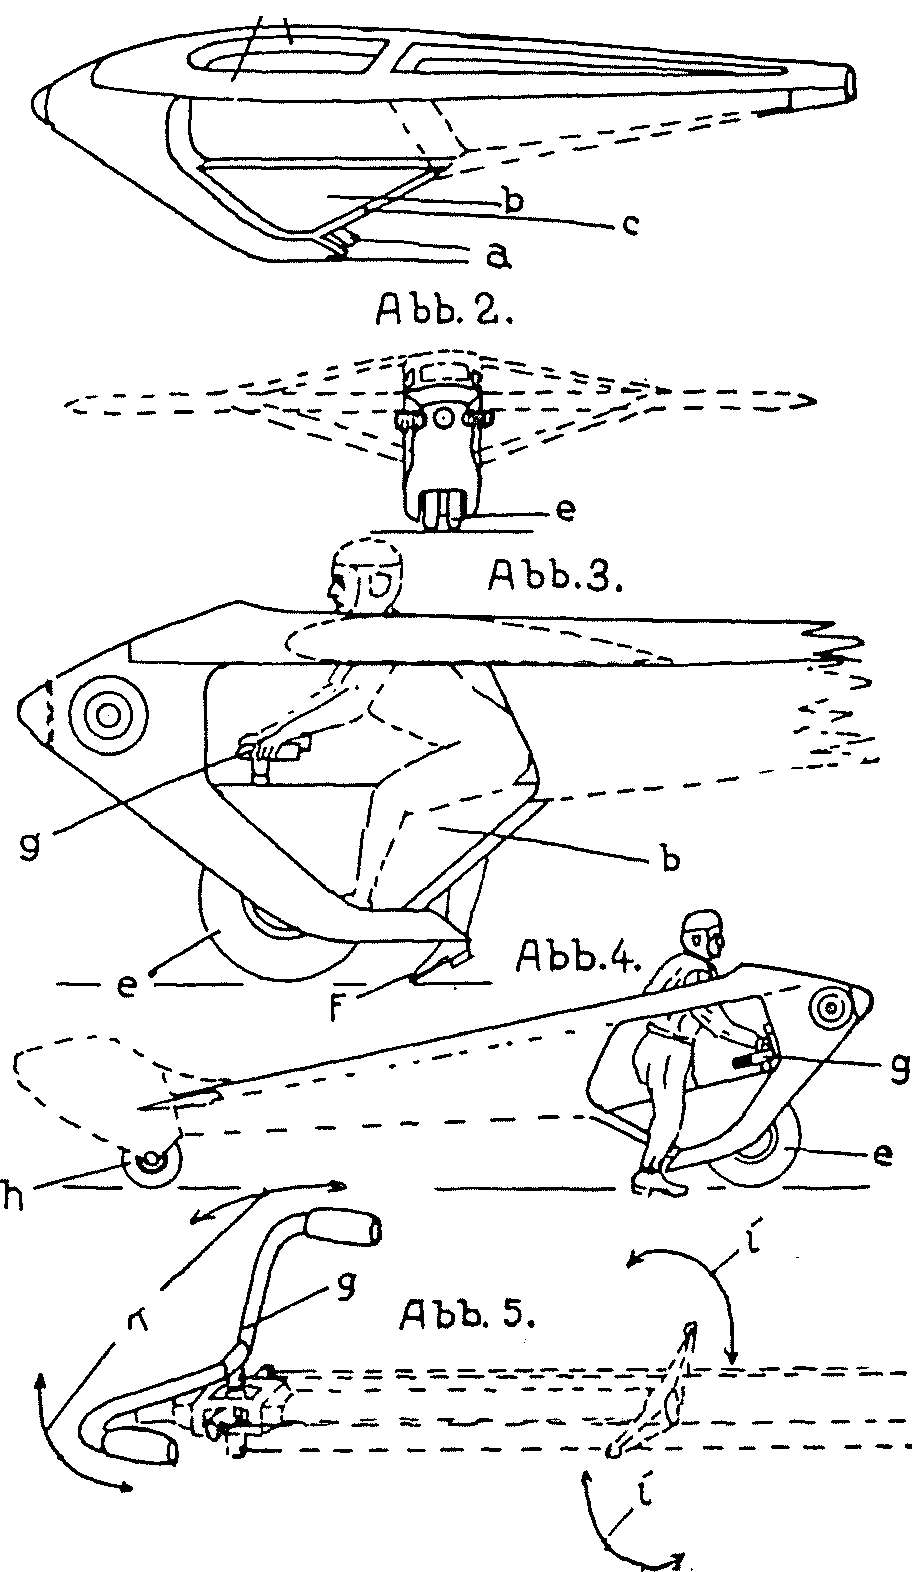 Luftfahrt und Luftverkehr sowie Luftwaffe im Dritten Reich 1933